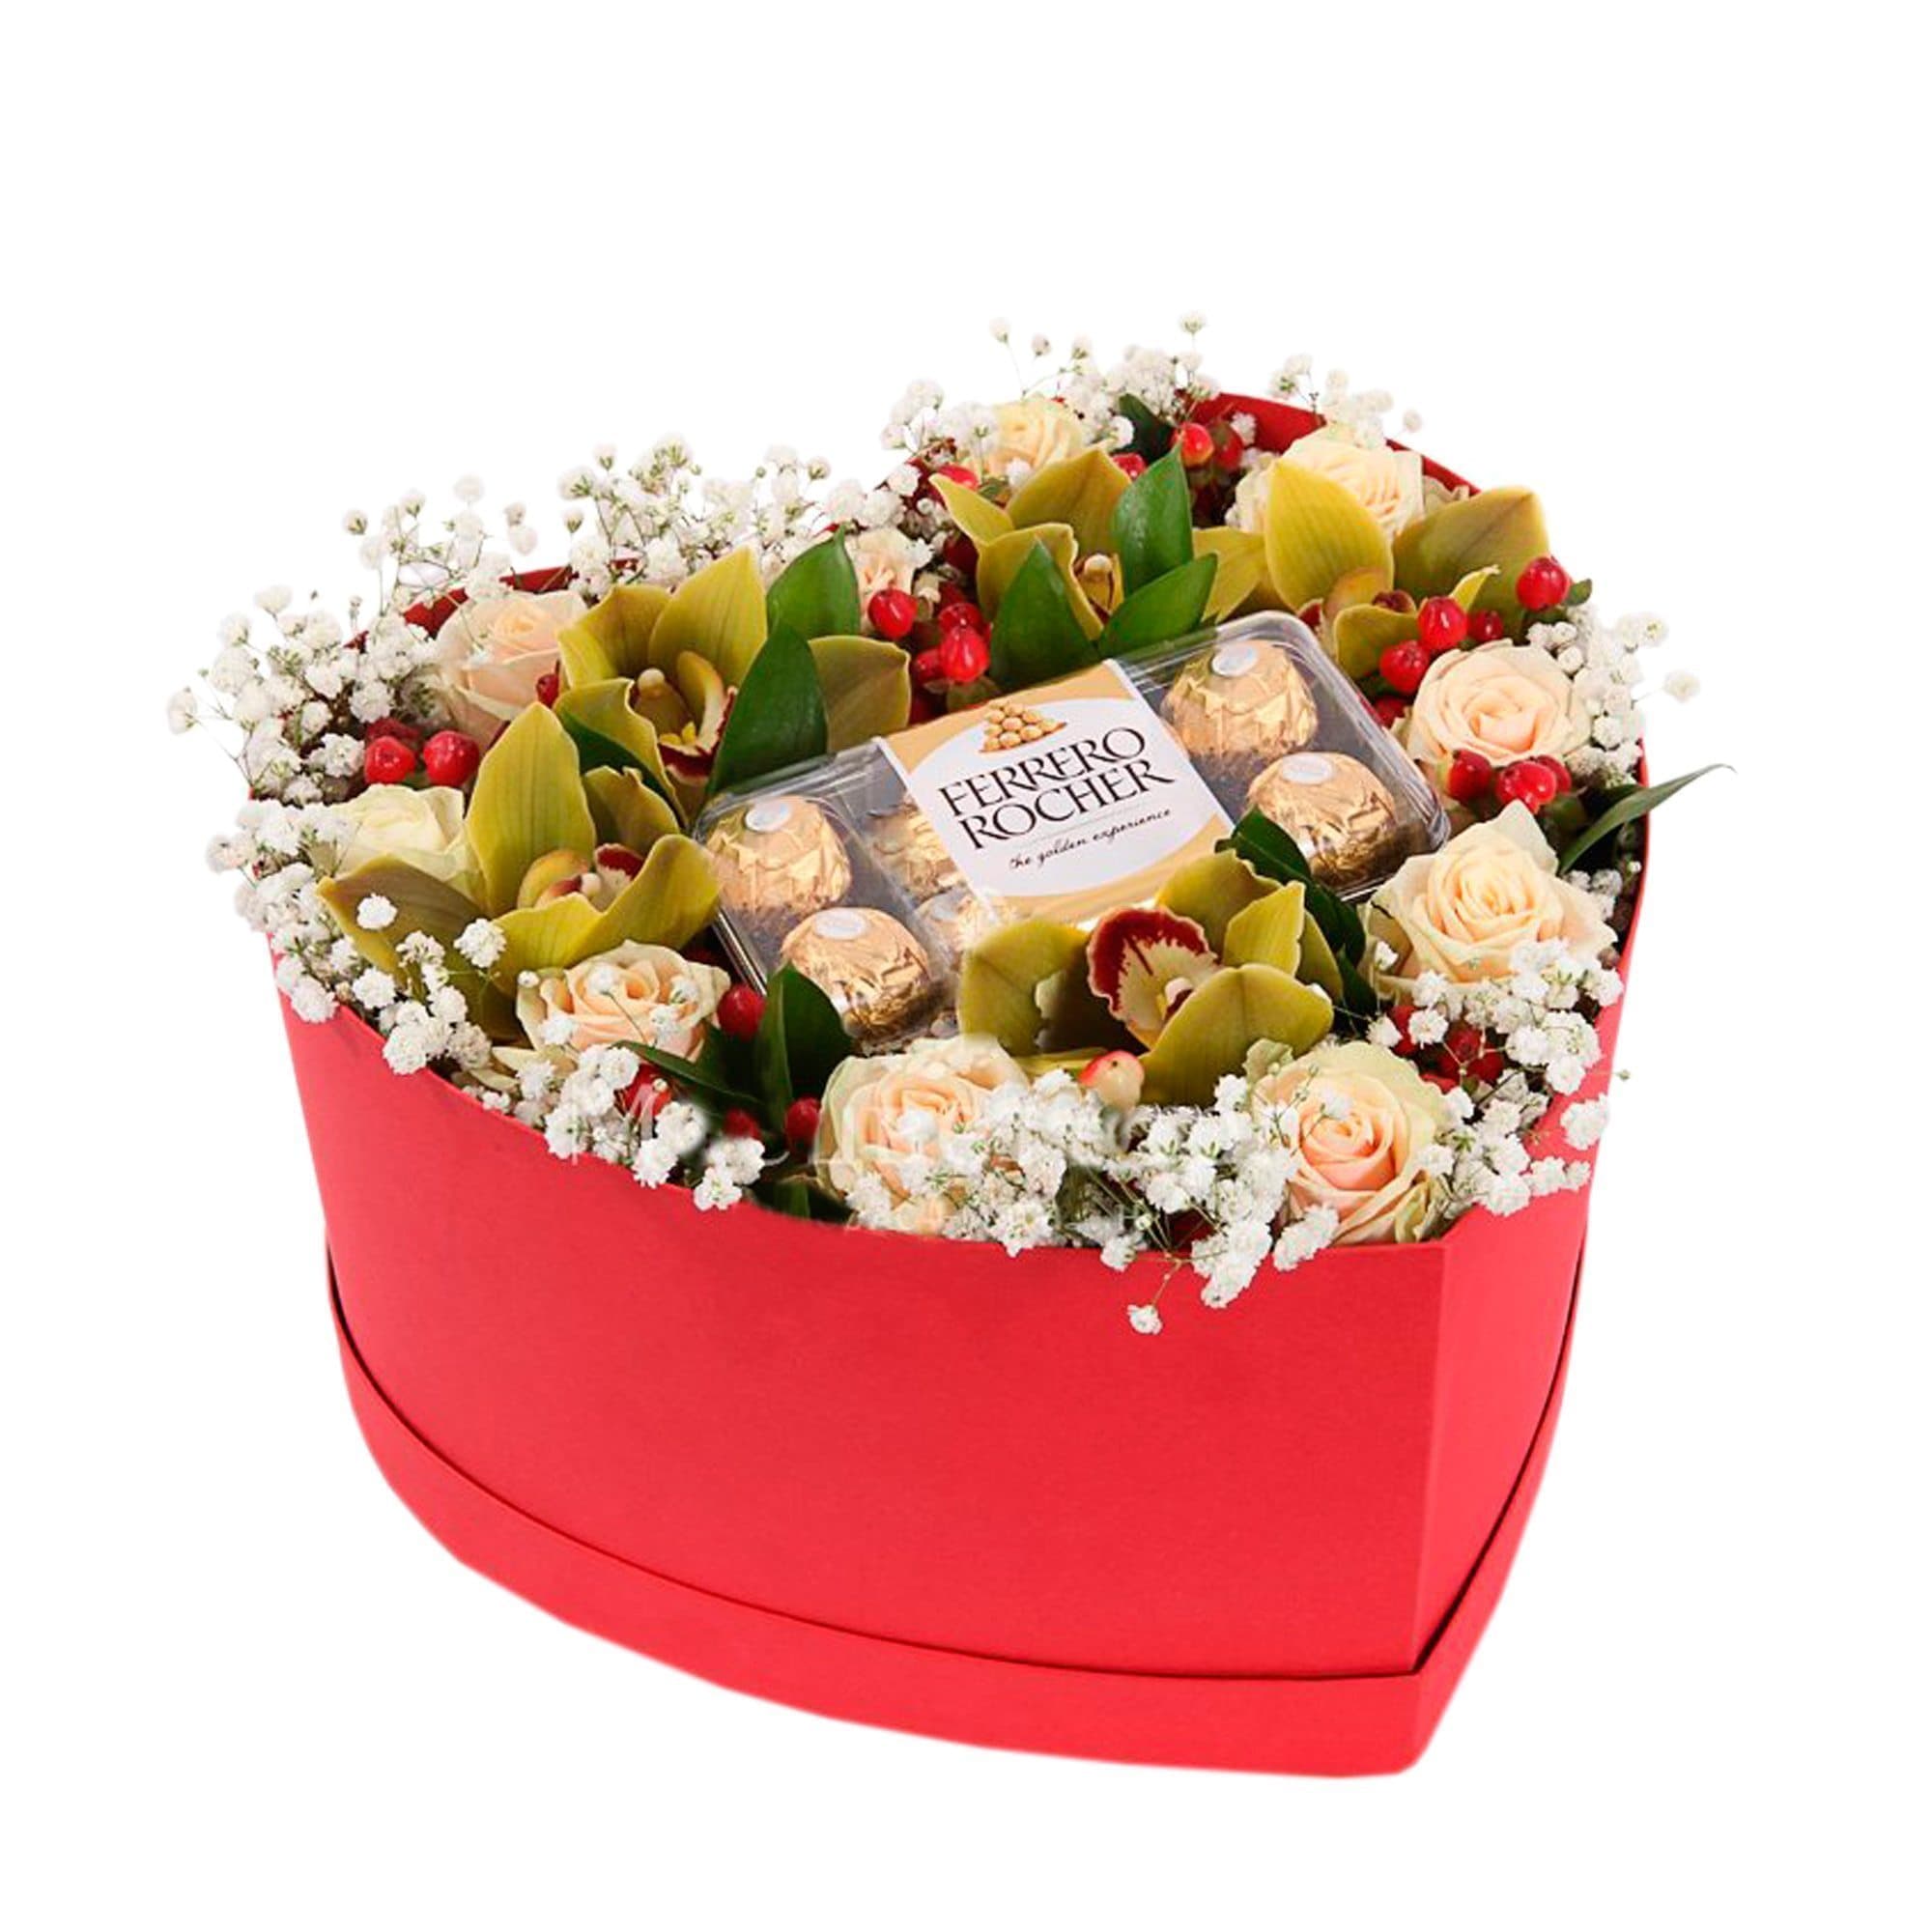 Букет из конфет в коробке: Идеи на тему «Букеты из конфет в шляпной коробке» (20+)